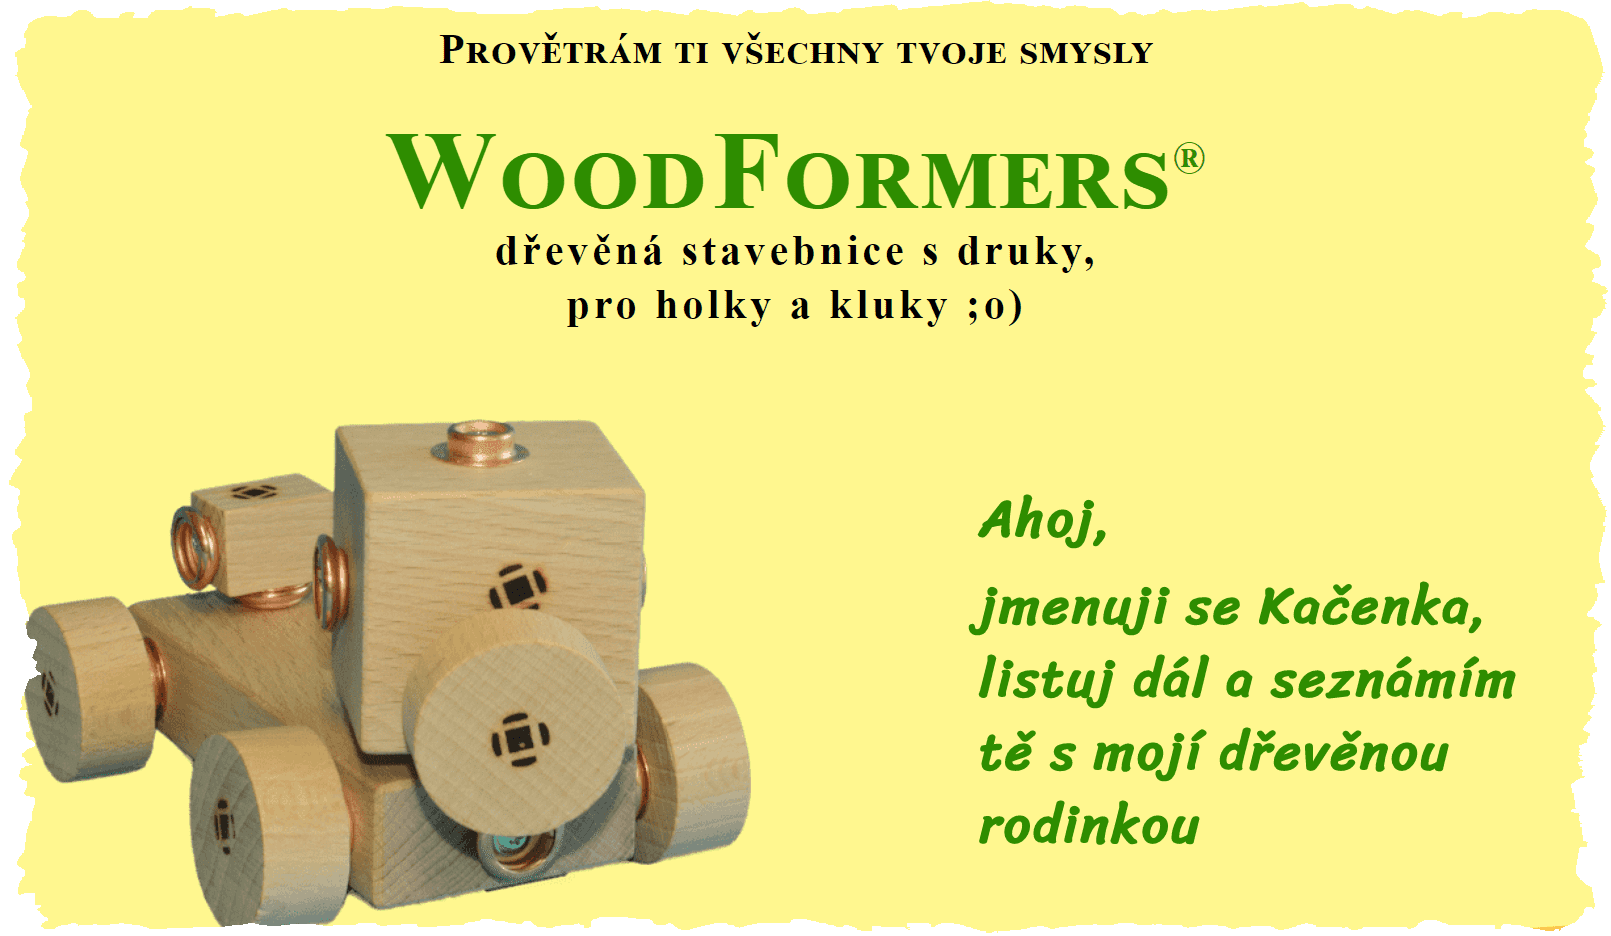 Web dřevěné hračky a stavebnice WoodFormers, Kačenka se představuje